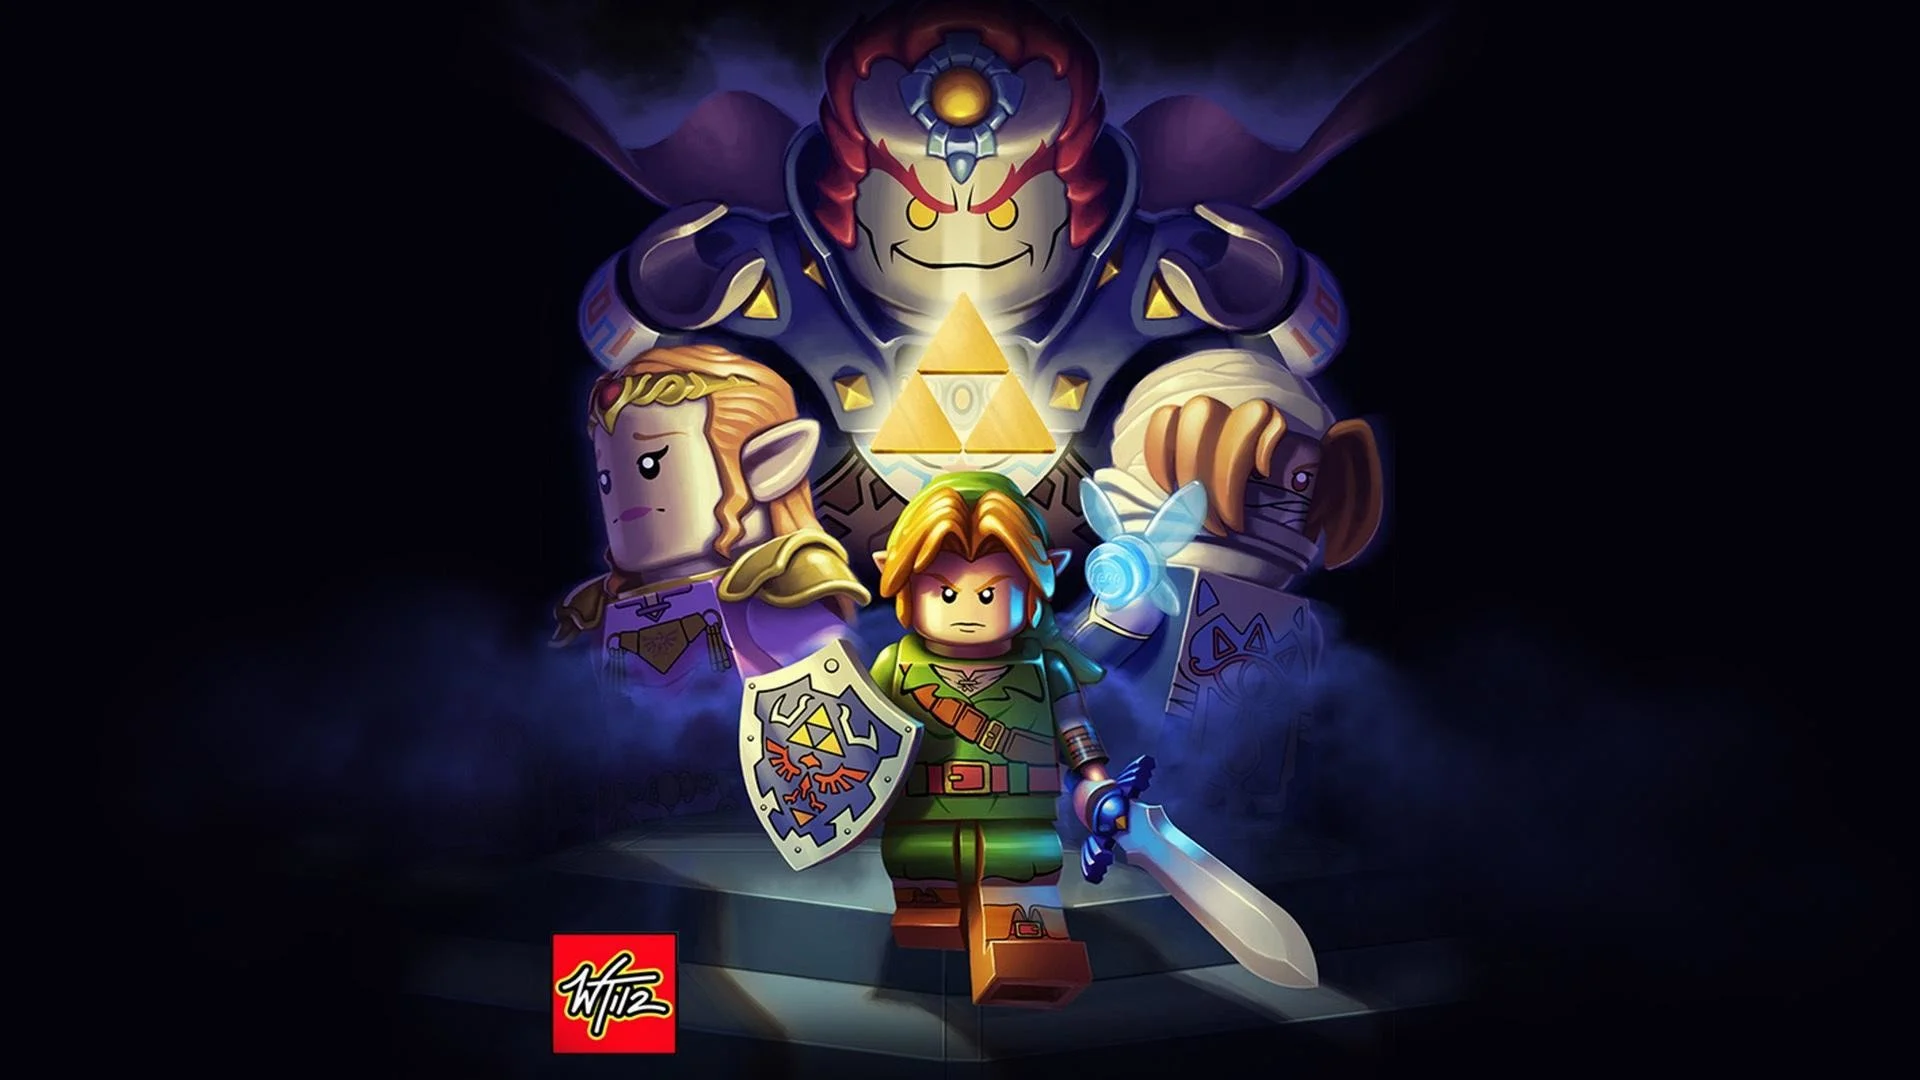 Legend-of-Zelda-Wallpapers-HD-Download-Free